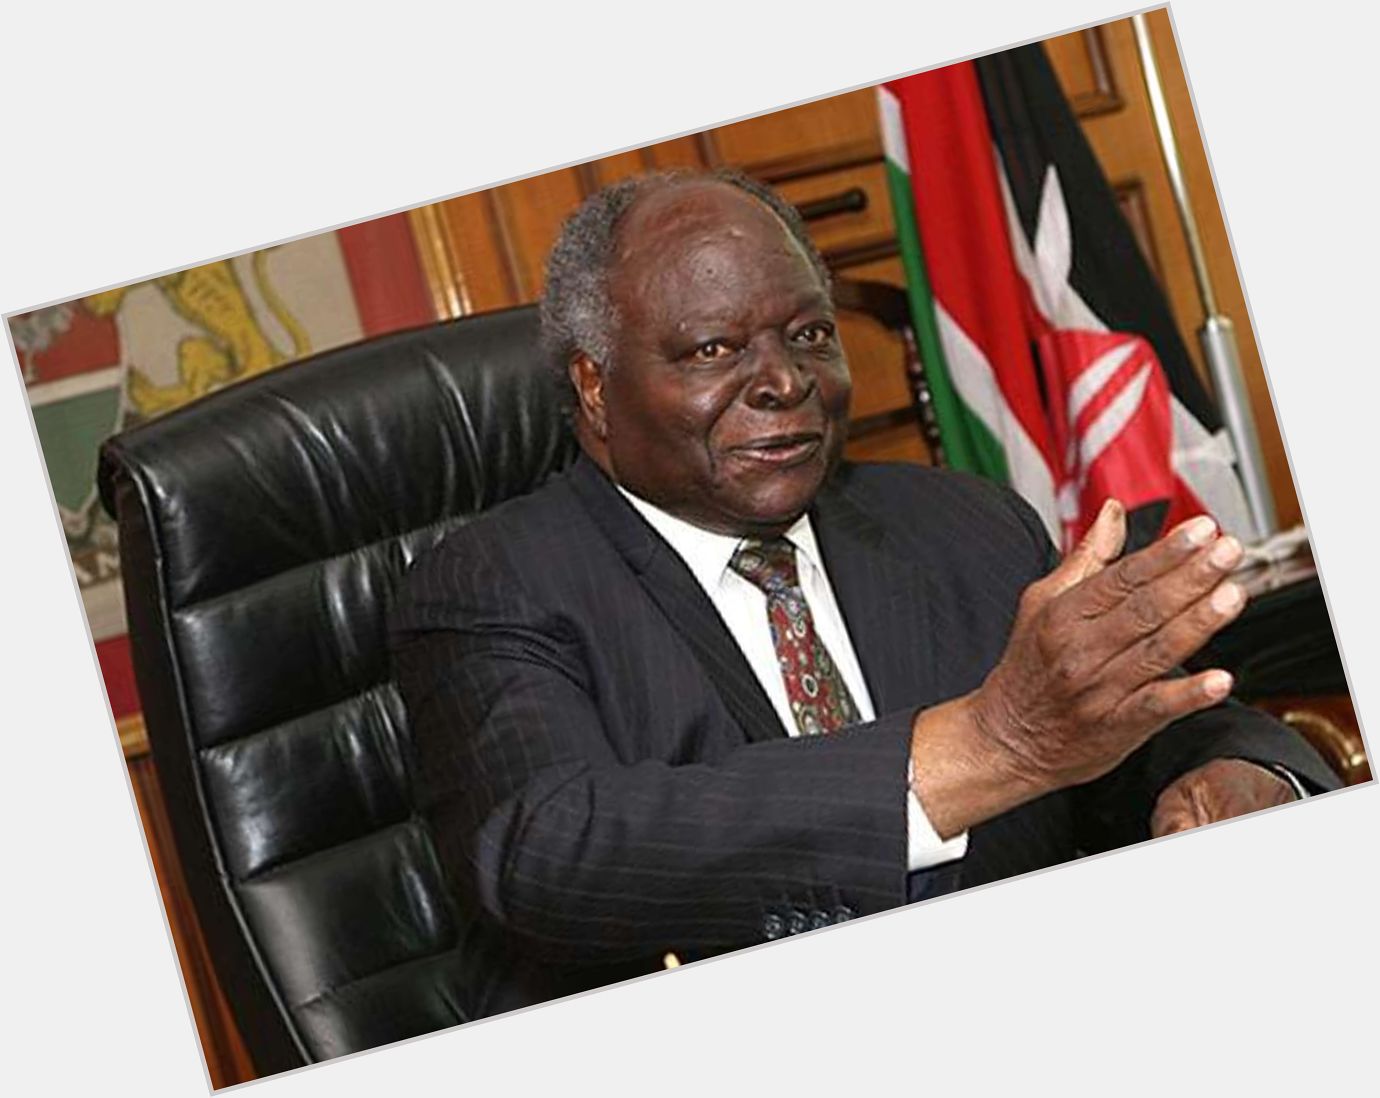 Happy birthday to our Former President HE Hon. Mwai Kibaki  